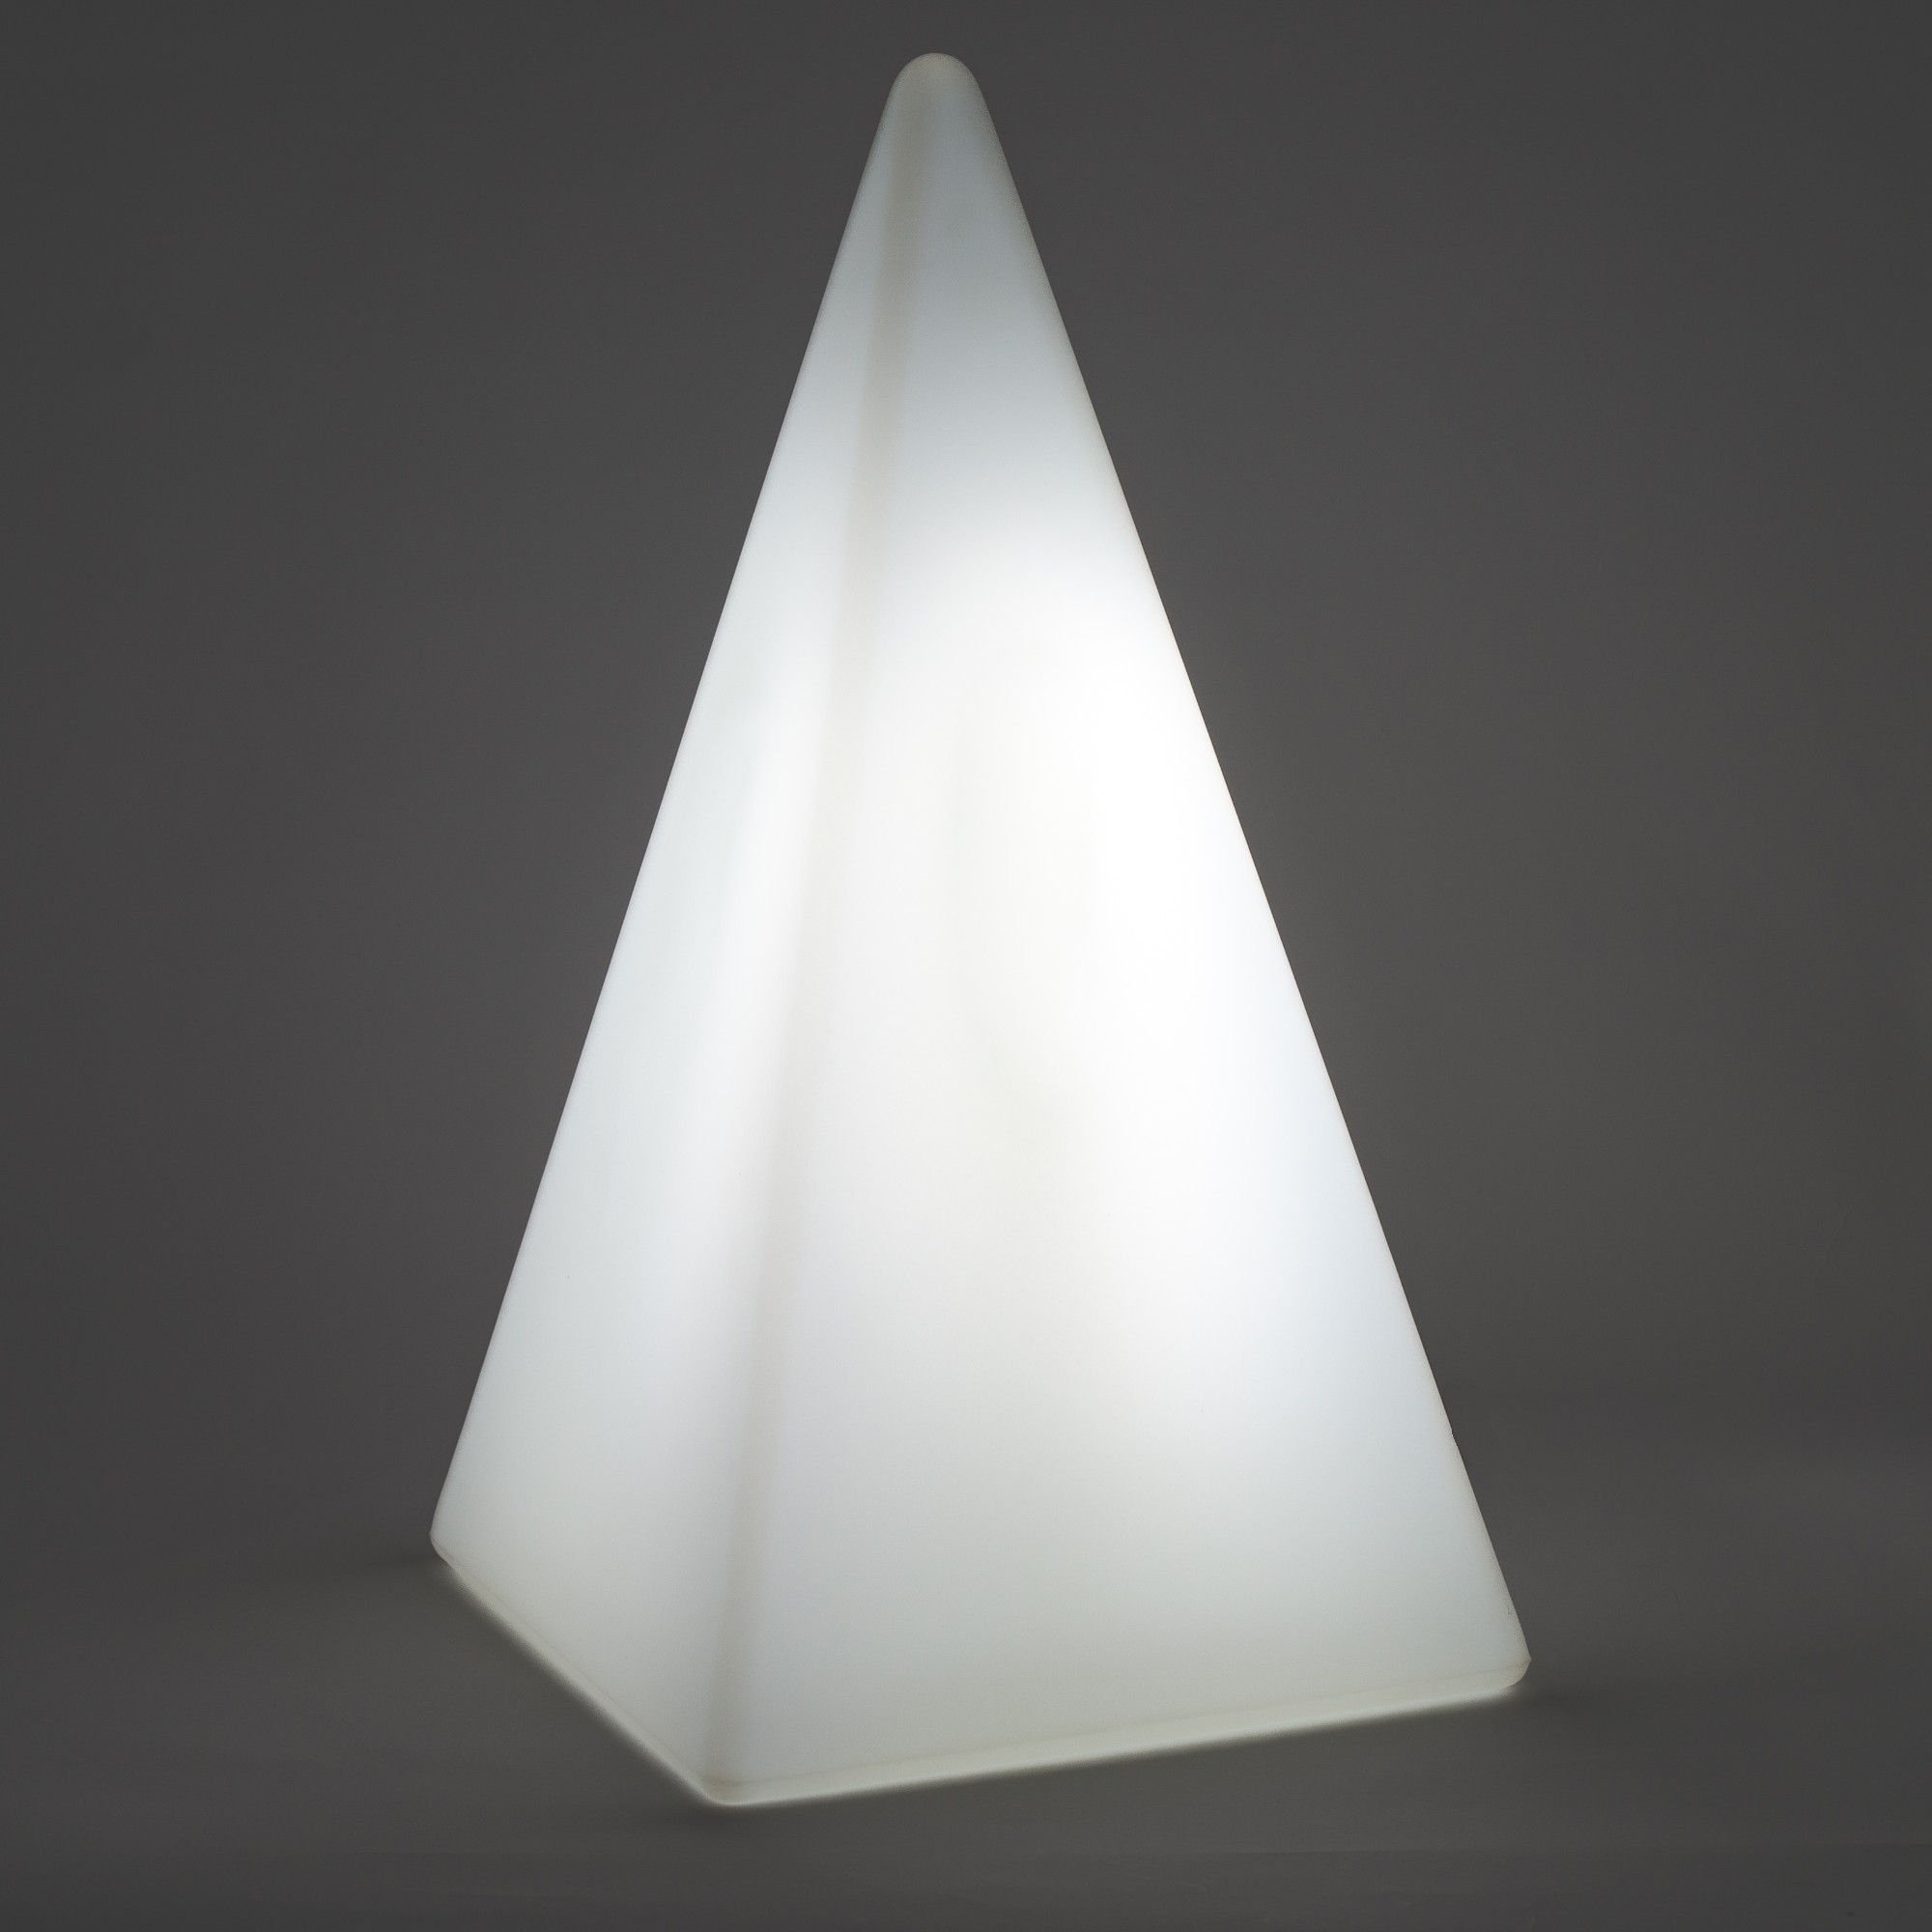 70308 Standleuchte Pyramide 73 cm der Firma EPSTEIN Design Leuchten